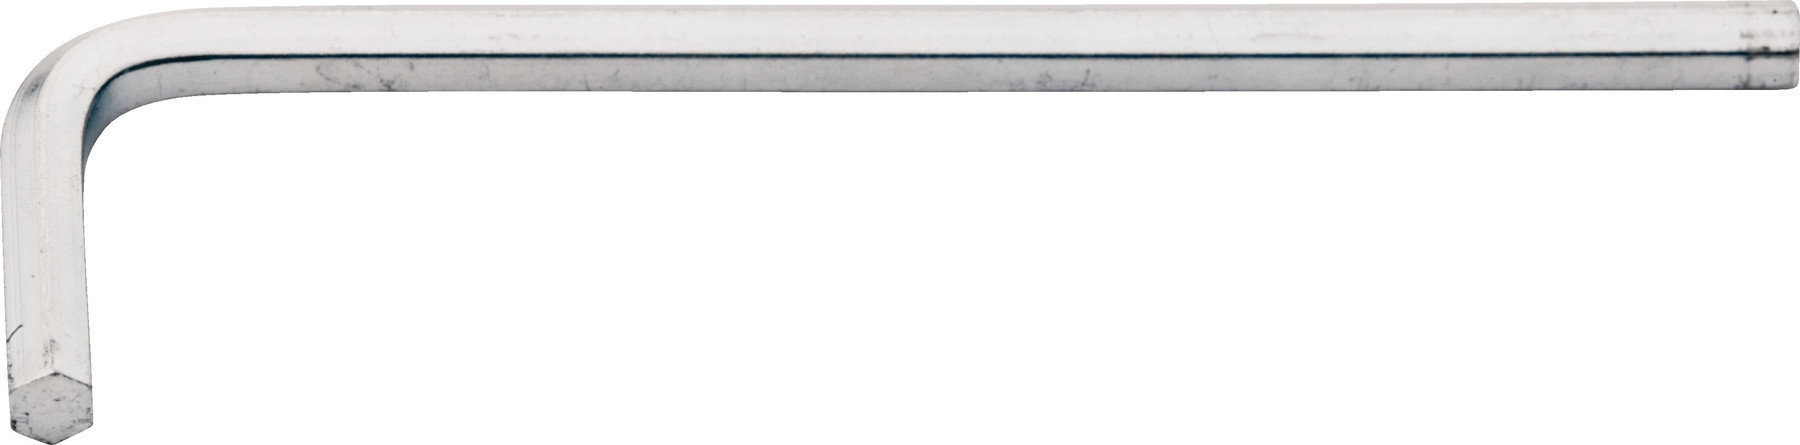 Werkzeug für Gittare Floyd Rose 3 mm Wrench